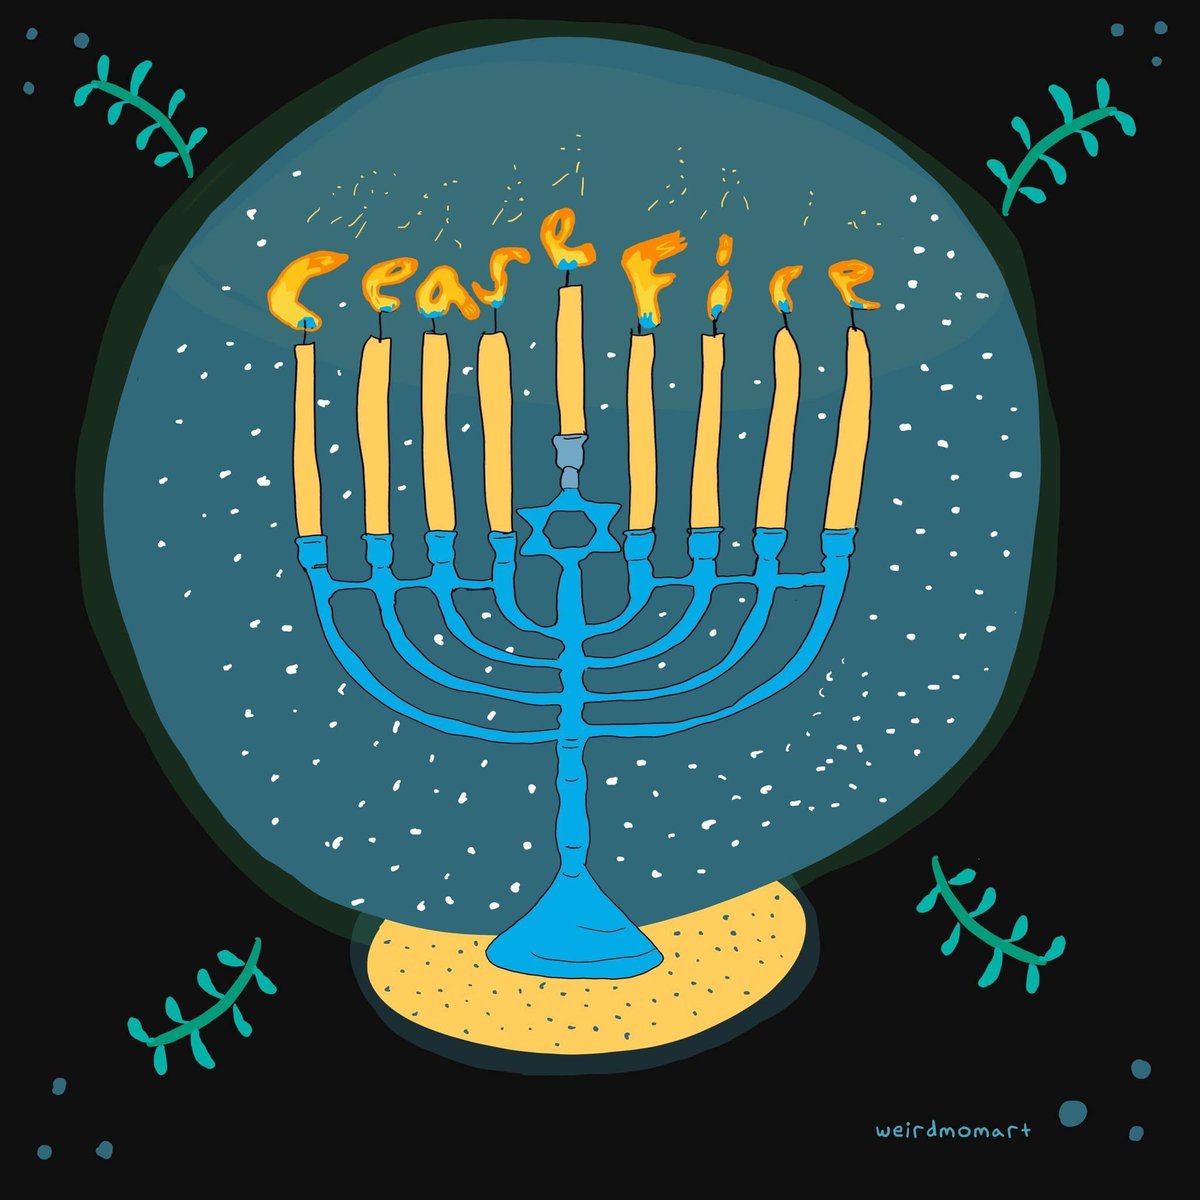 #HanukkahSameach 🕎
#CeasefireNOW 🕊️